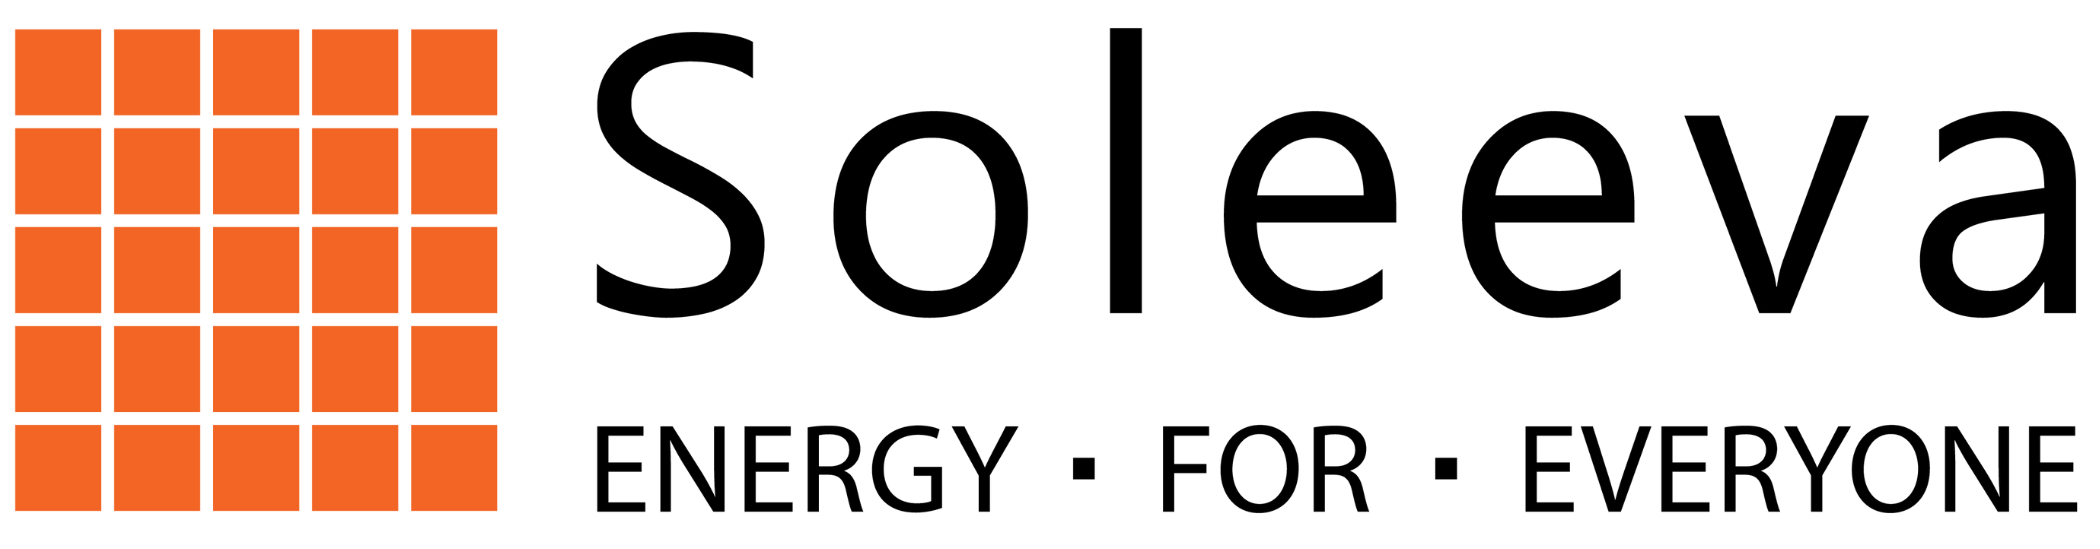 Soleeva Energy logo